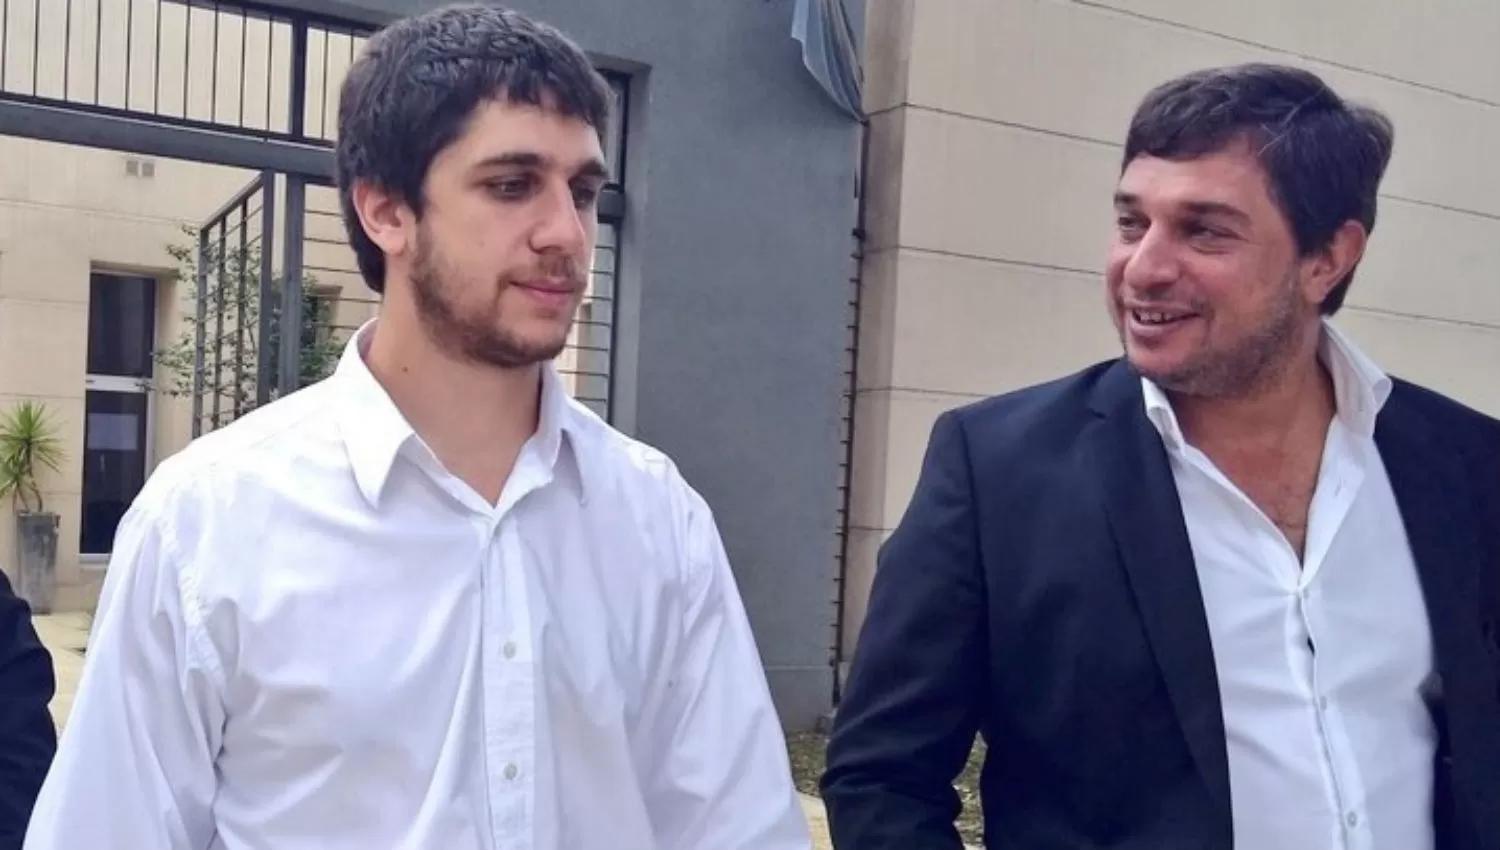 EN LA MORGUE JUDICIAL. Daniel Alperovich (izquierda) y su hermano Gabriel. FOTO DE JOSÉ ROMERO SILVA VÍA TWITTER